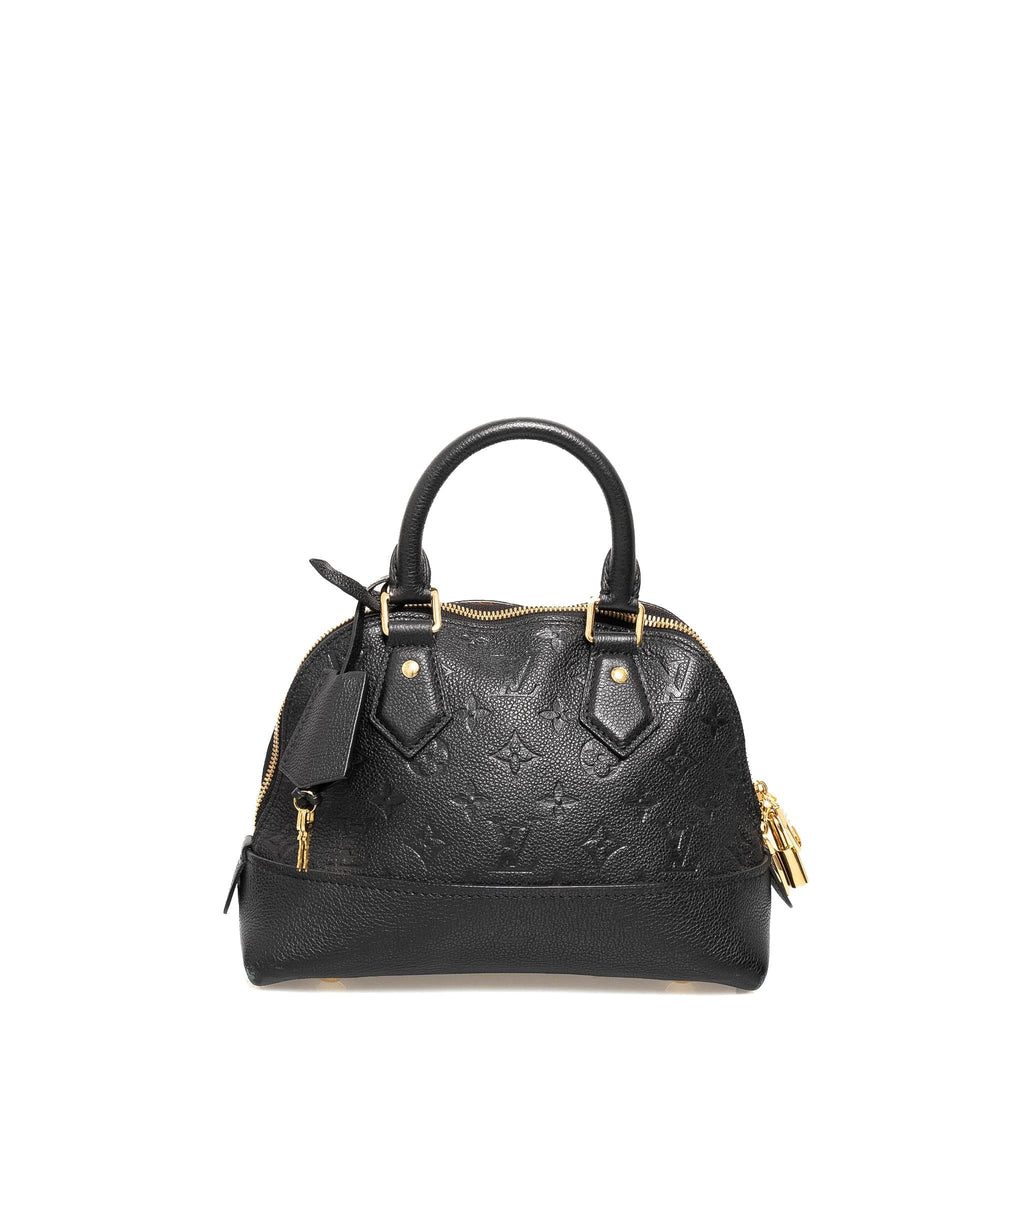 Lot 6  A Louis Vuitton black Epi leather Alma bag